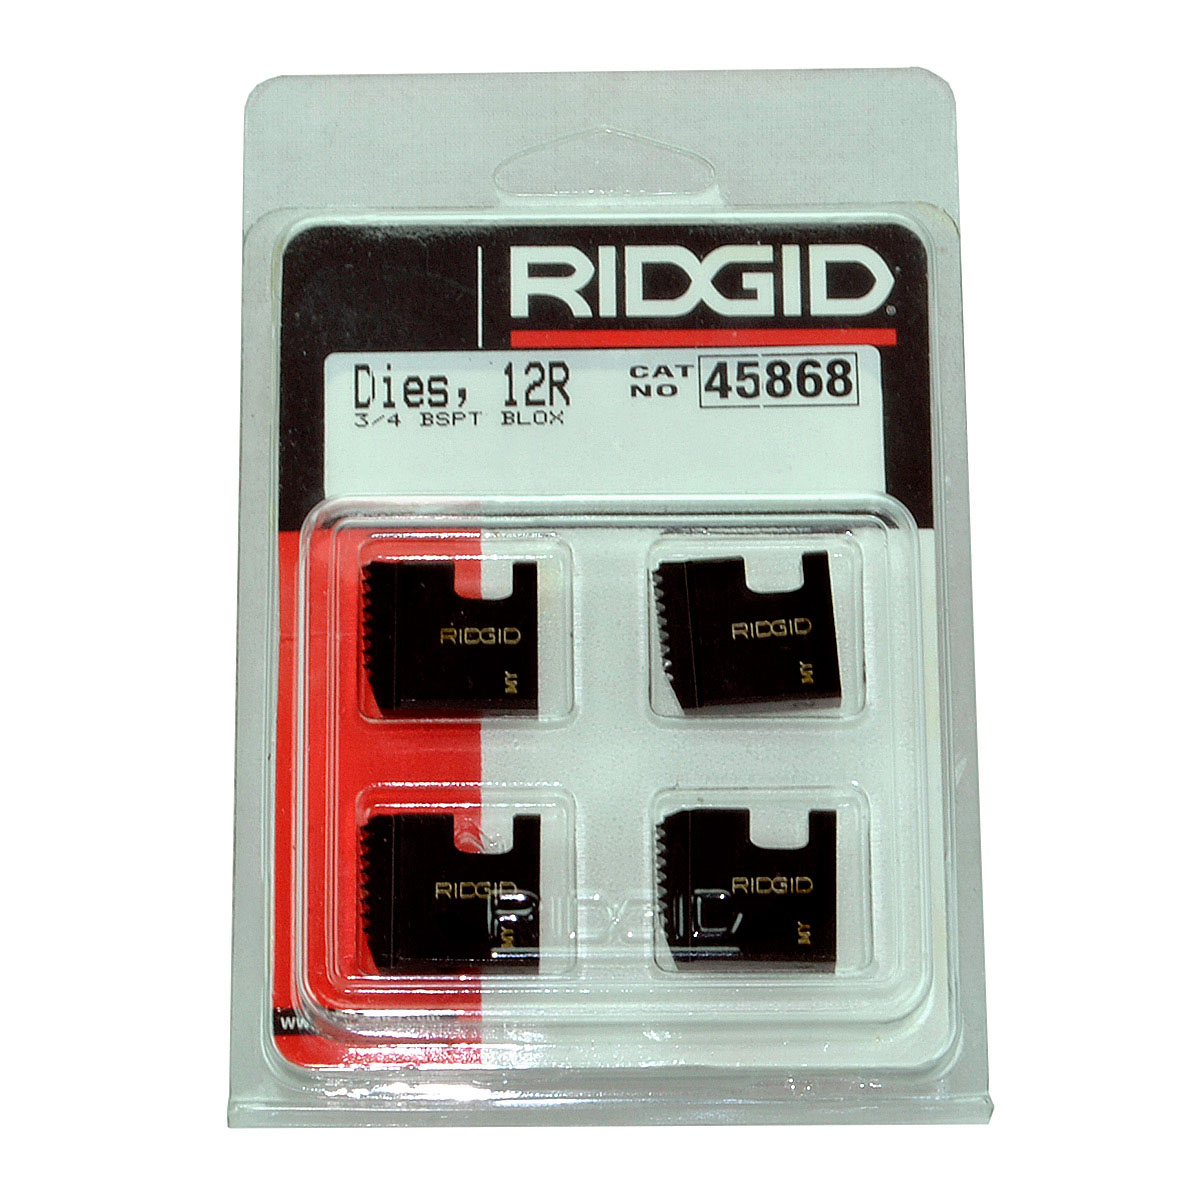 RIDGID 45868 - Pipe Die Set Bspt – 3/4inch